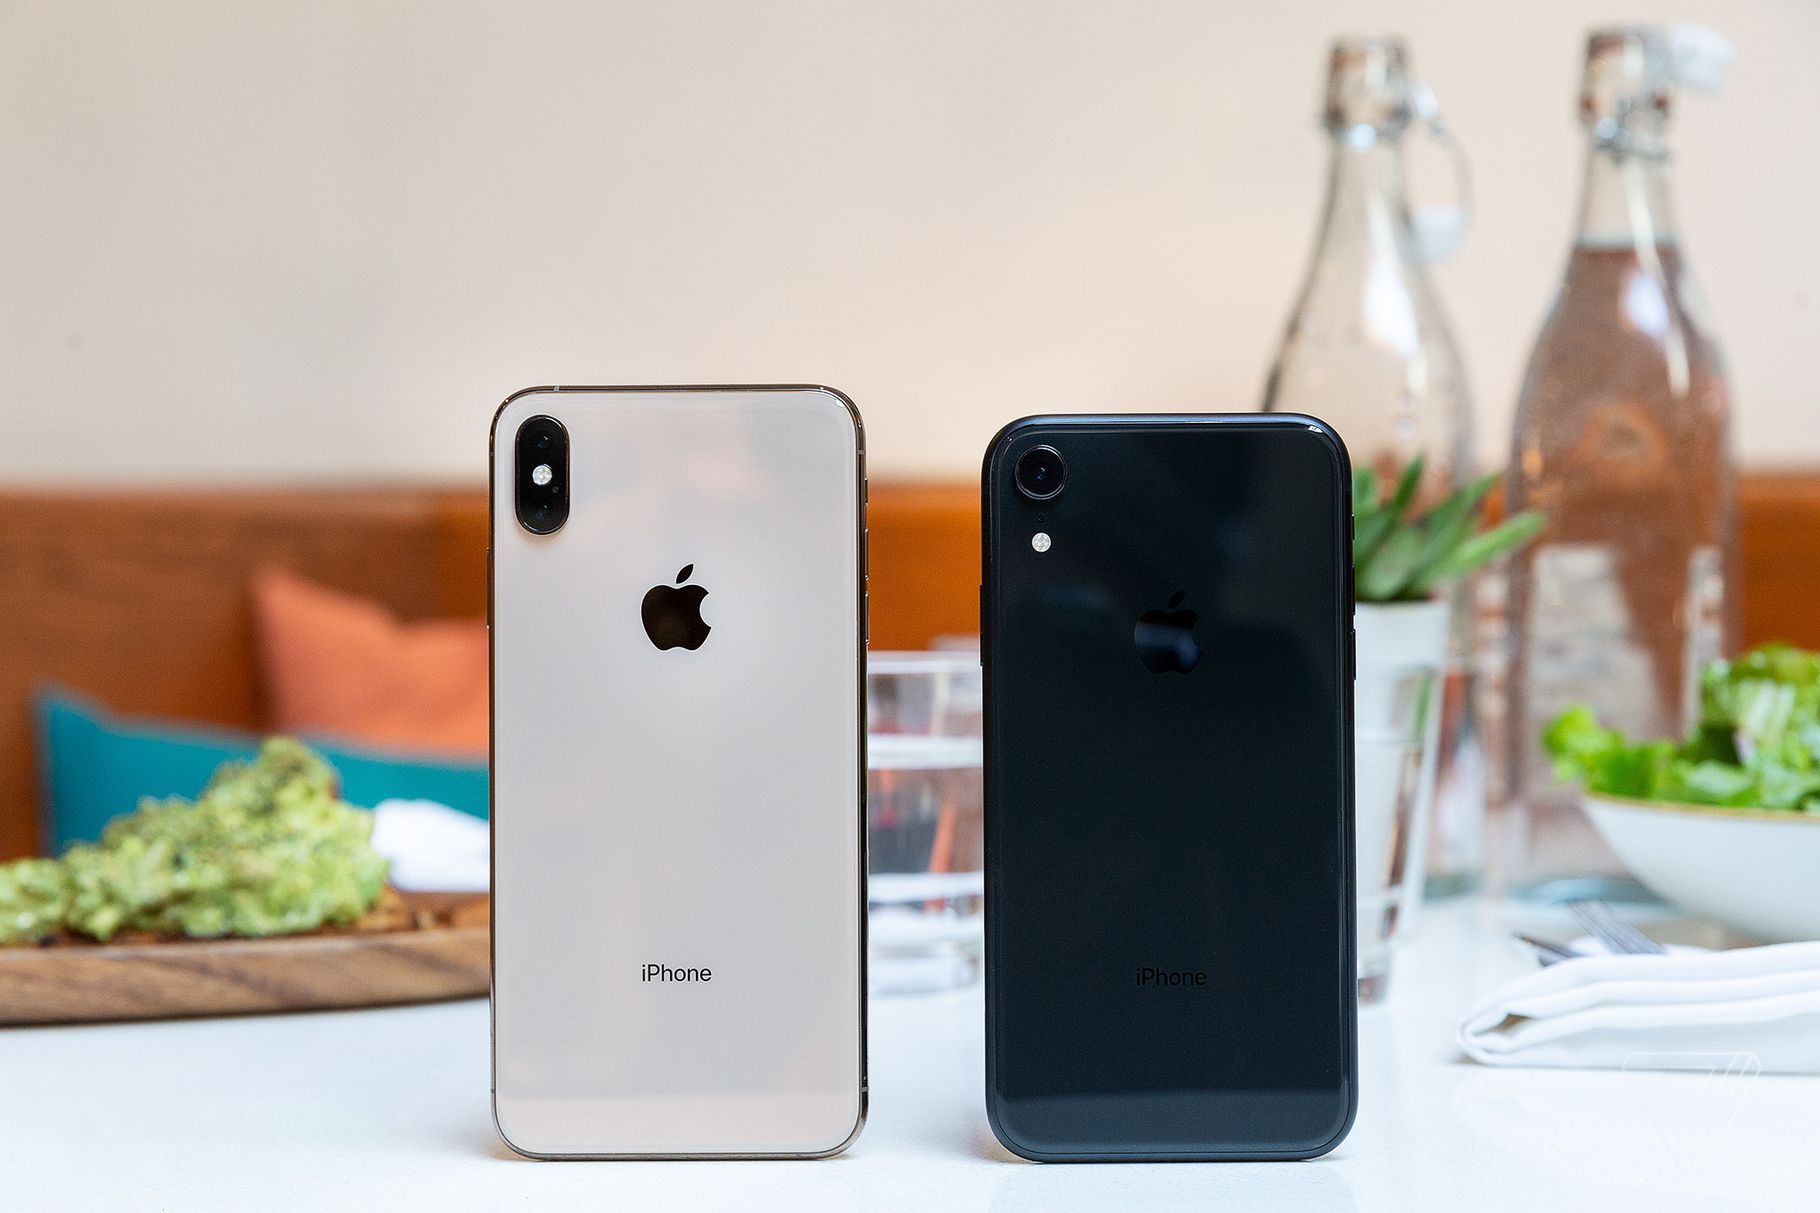 Apple được dự đoán sẽ phát triển 3 mẫu iPhone dành cho 2019, chiếc cao cấp nhất sẽ có 3 camera